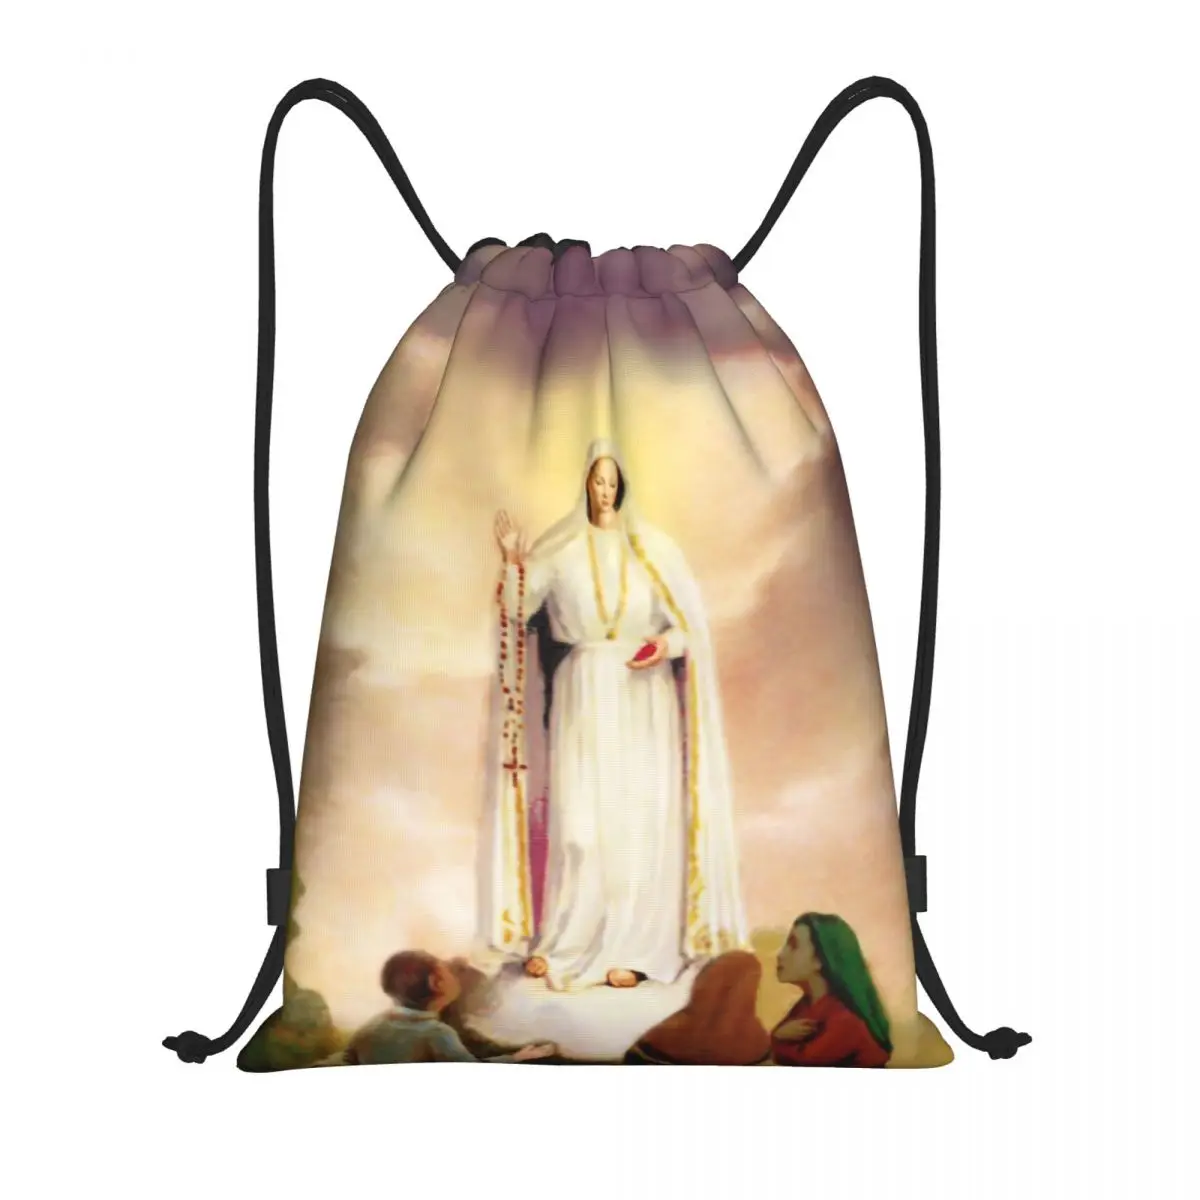 

Рюкзак на шнурке для нашей леди Фатимы, спортивный рюкзак для тренажерного зала, складная сумка для тренировок с четками, католическими, христианскими Девами Марии